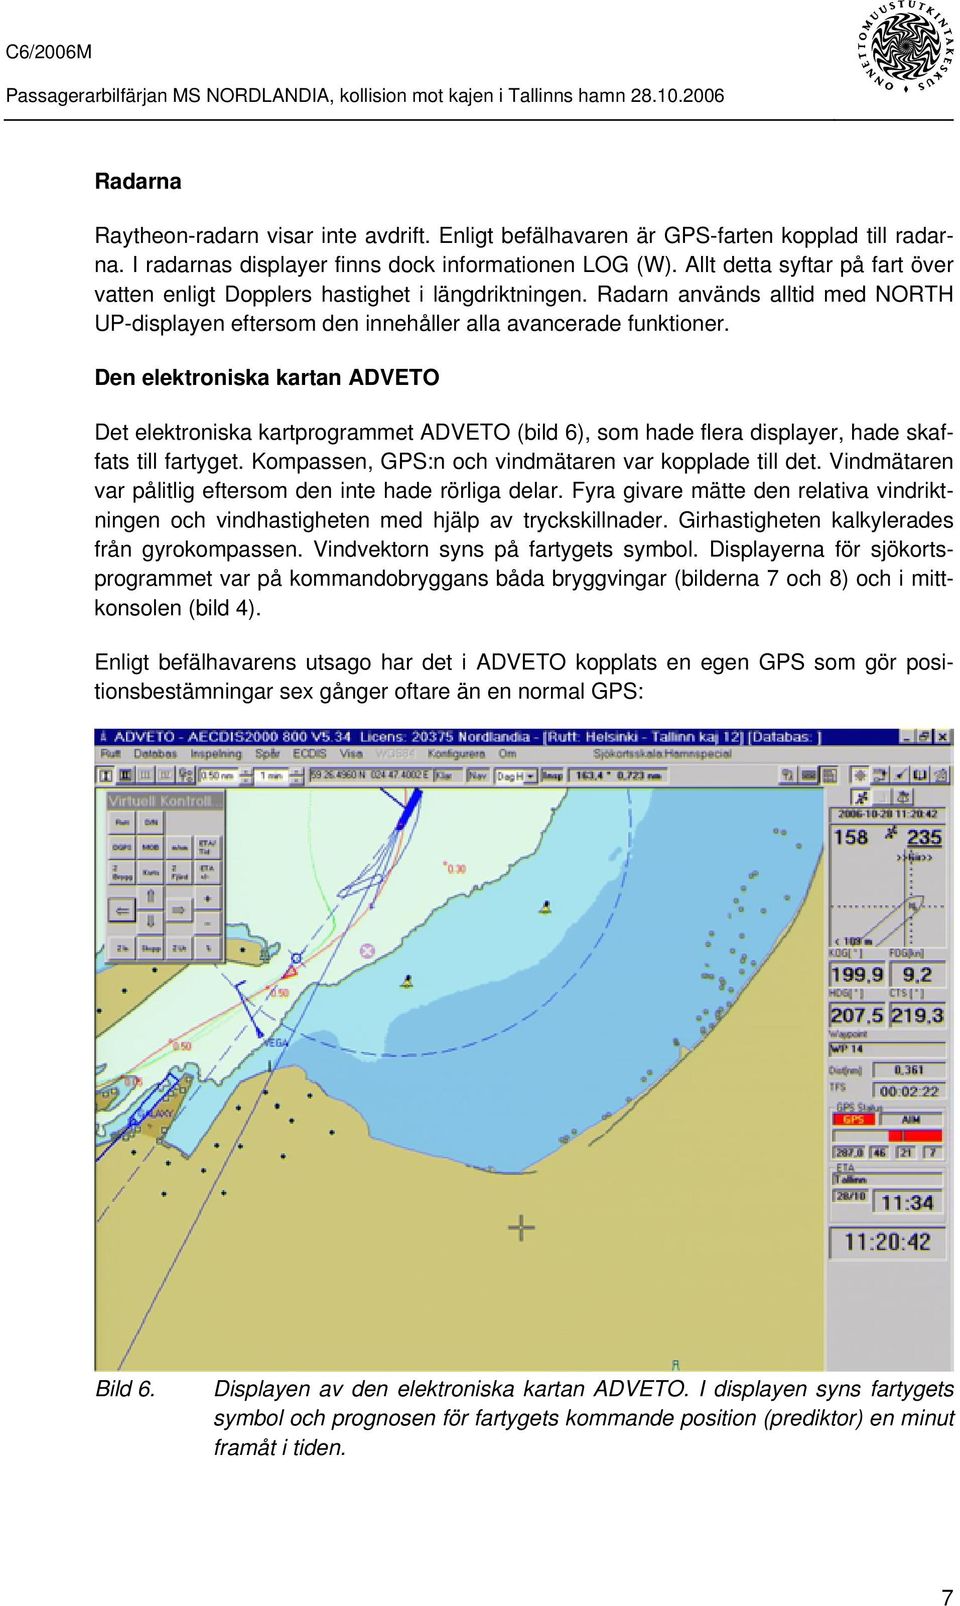 Den elektroniska kartan ADVETO Det elektroniska kartprogrammet ADVETO (bild 6), som hade flera displayer, hade skaffats till fartyget. Kompassen, GPS:n och vindmätaren var kopplade till det.